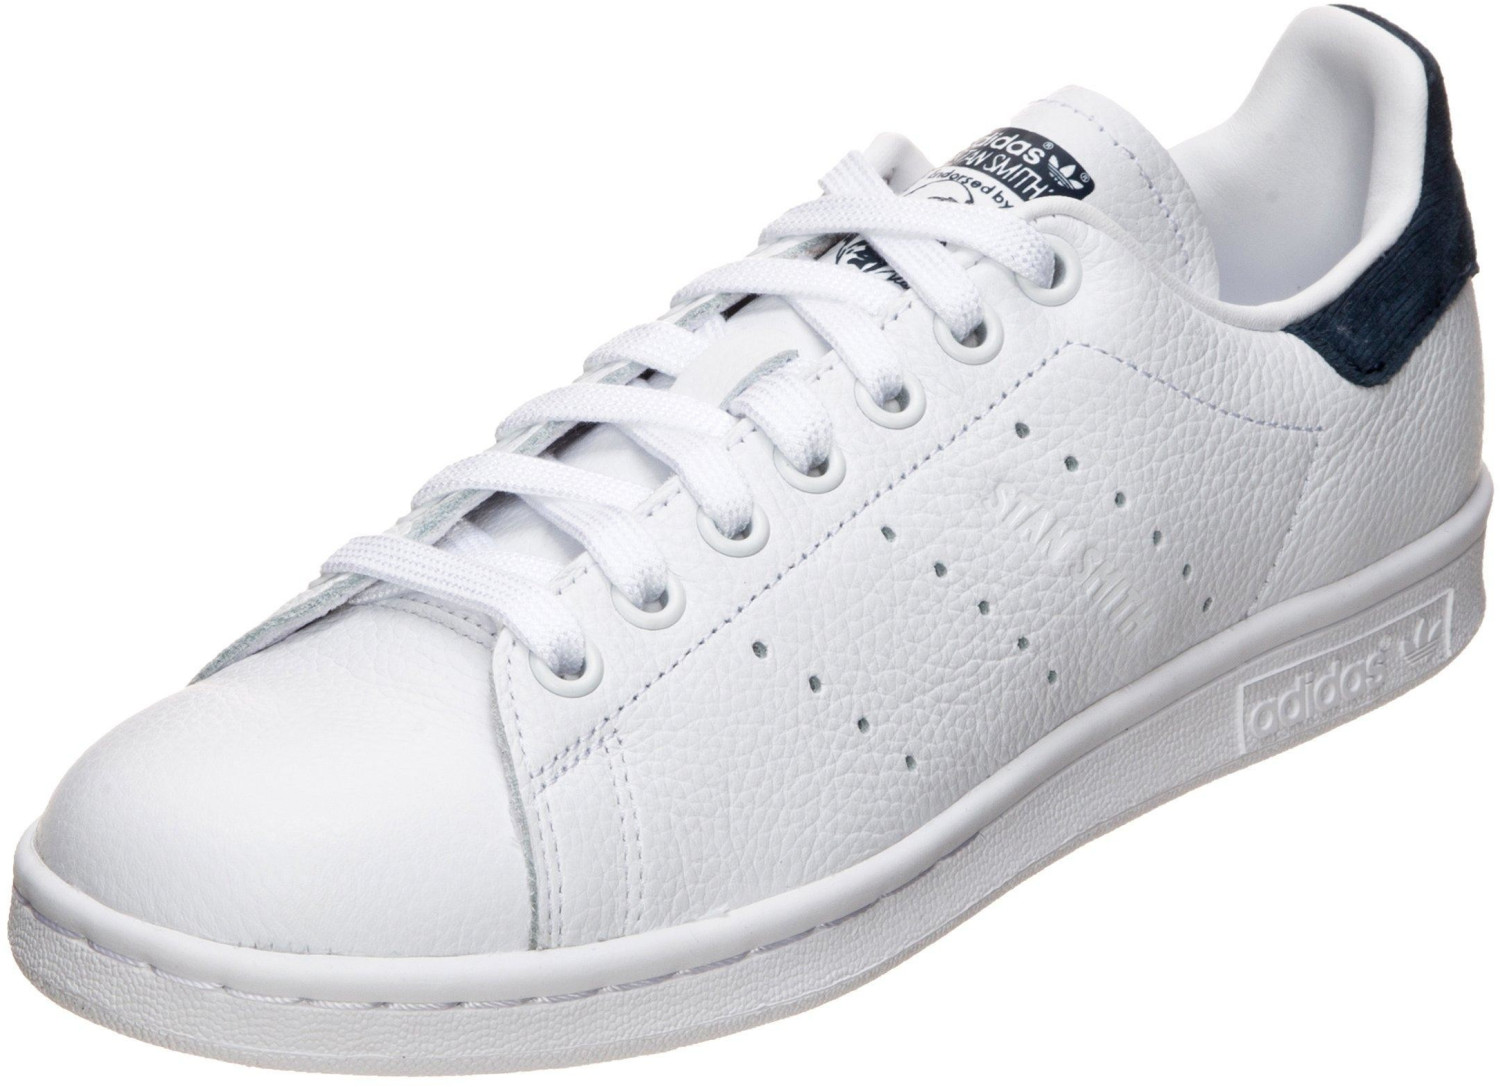 Adidas Stan Smith W vapour grey/ftwr white